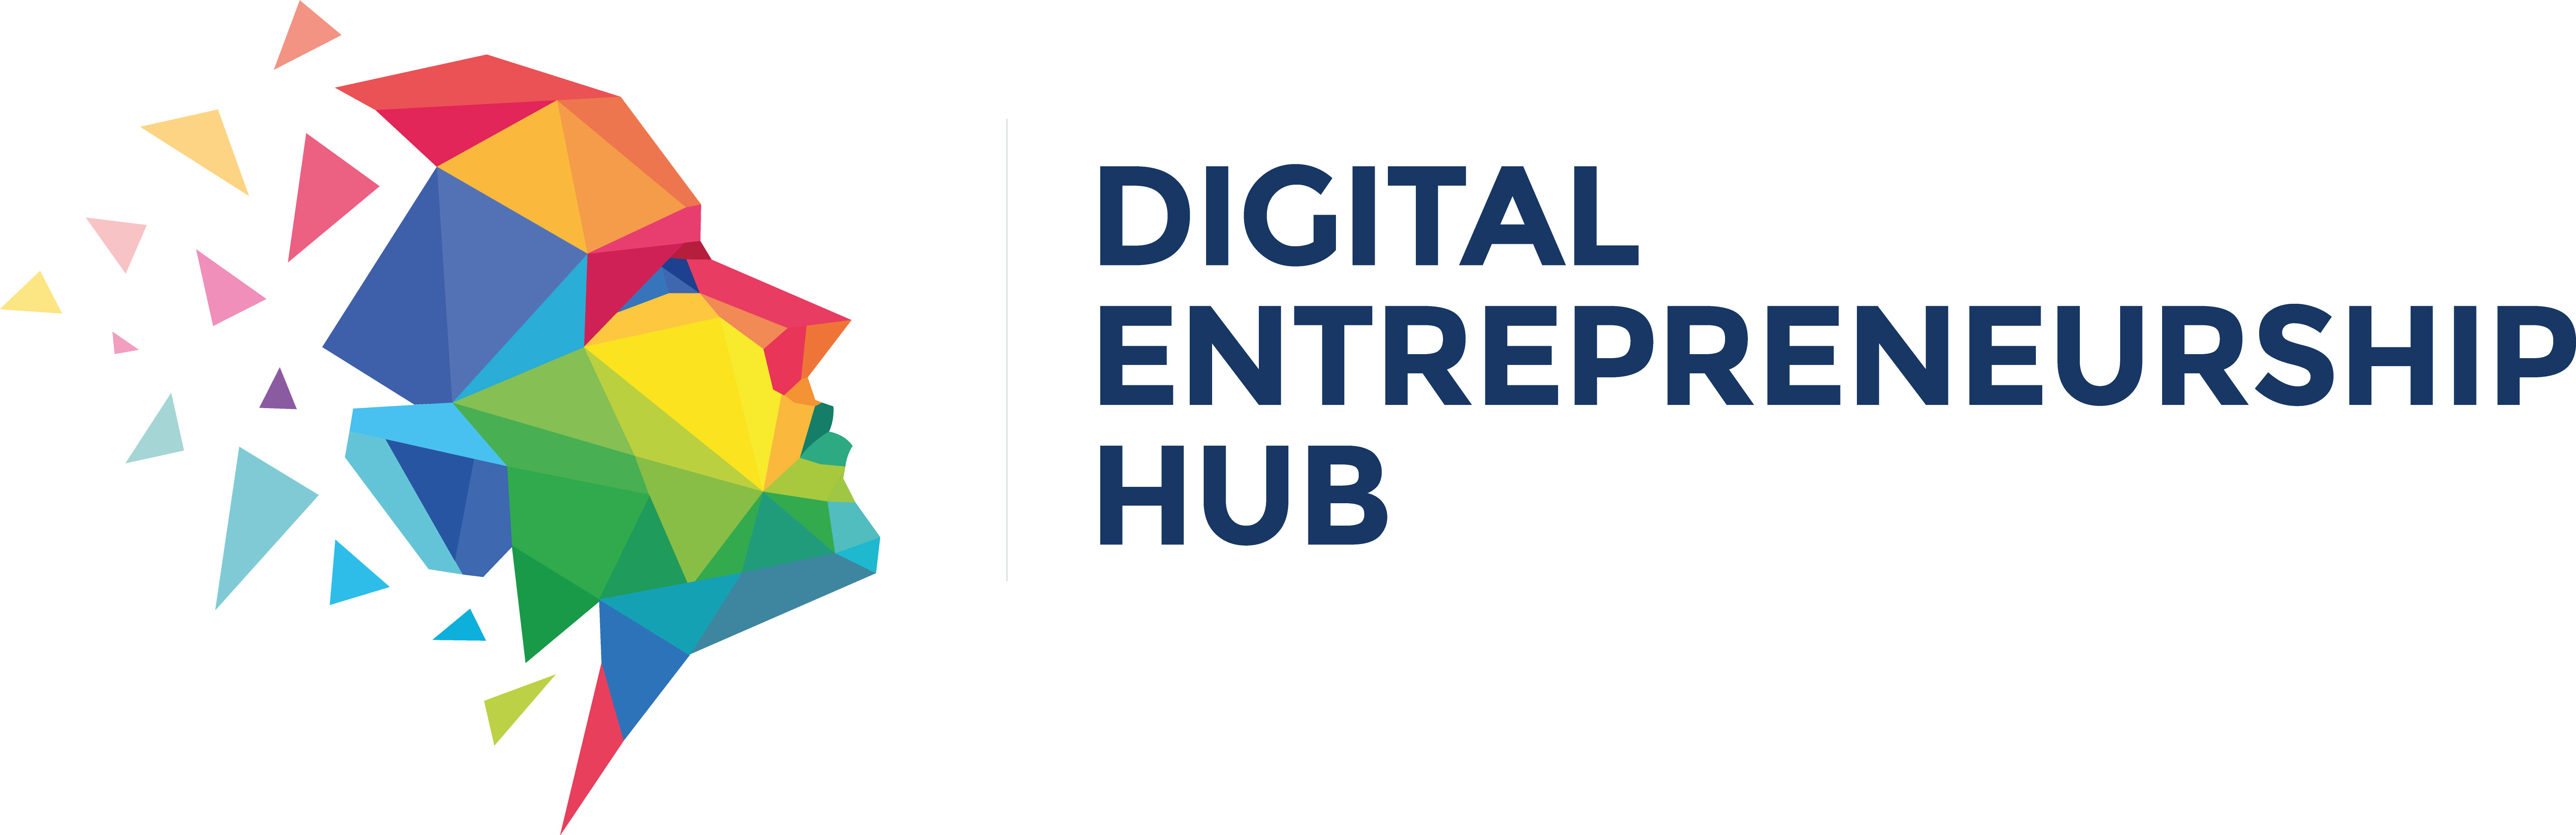 Digital Entrepreneurship Hub